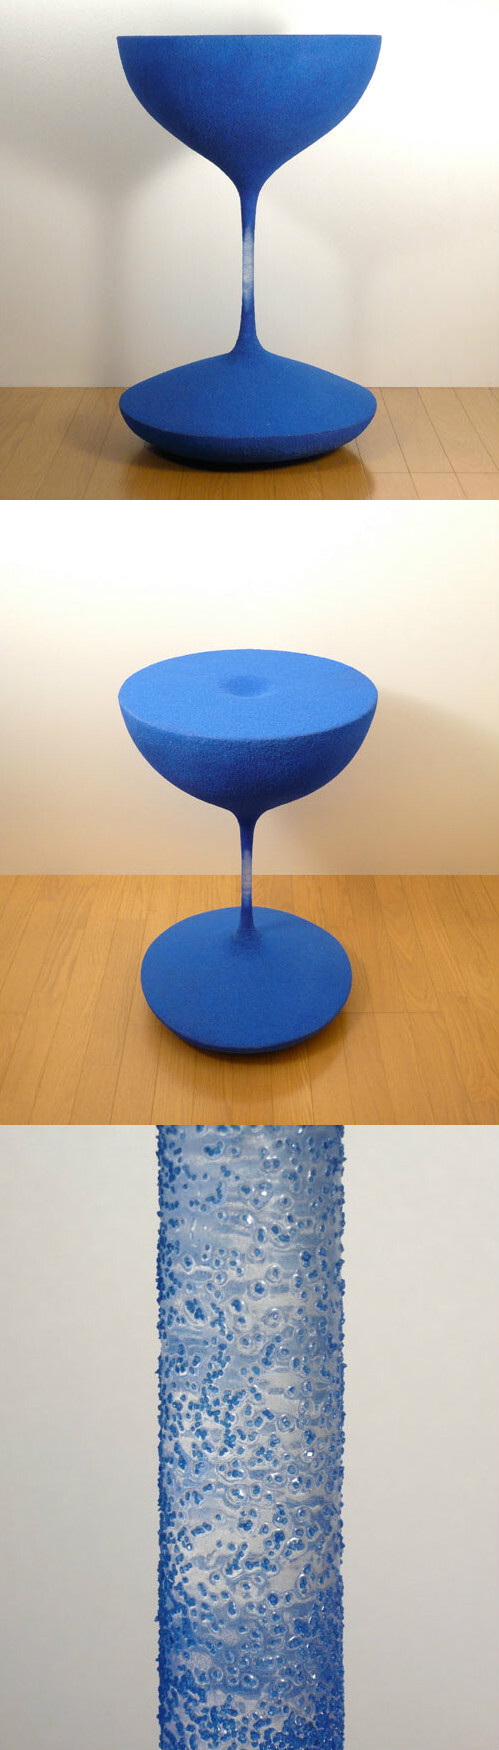 日本设计师小泉忍设计了一款名为“Moment（瞬间）”的咖啡桌，桌子由沙子做成，看上去像是一个沙漏。 设计师希望人们能抽出点时间来喝杯咖啡，或者读一本书，这样就可以让时间停止。 小泉忍的另一幅作品叫做“Eternal（永恒）”，一把用石头做成的椅子。